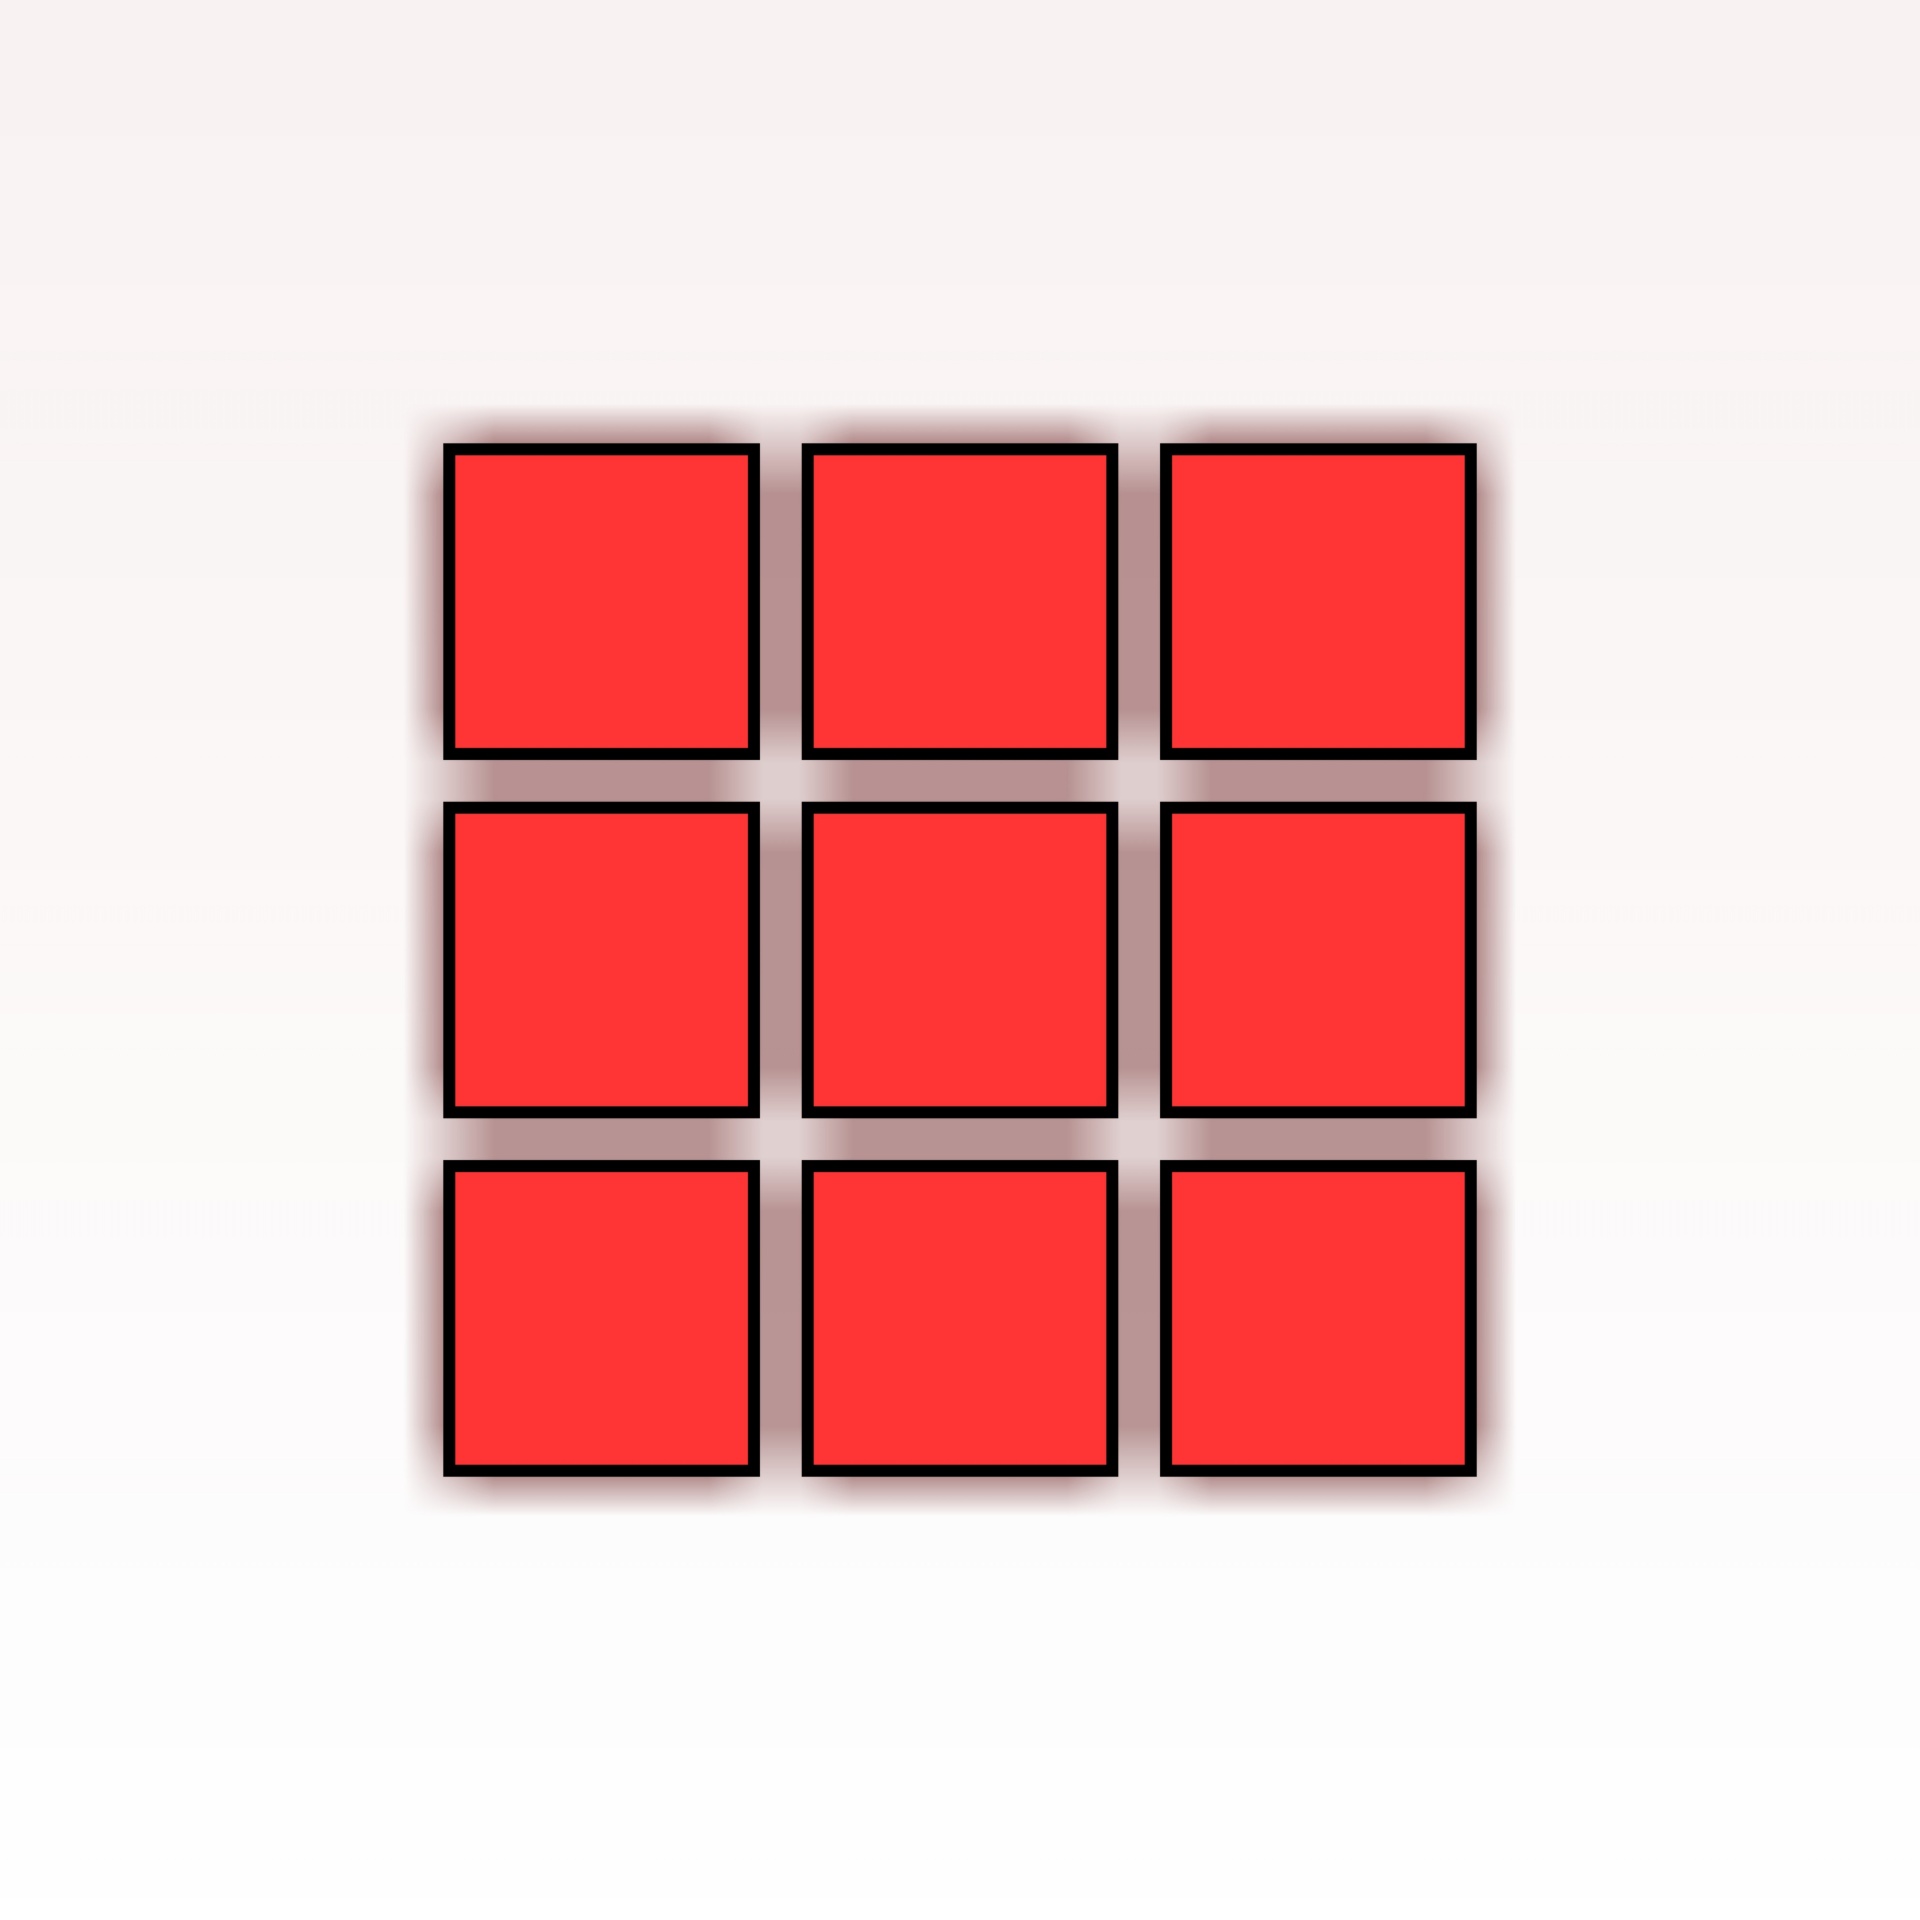 4 5 квадратиков. Красный квадрат. Красный квадратик. Квадраты раздаточный материал. Красный квадрат на белом фоне.